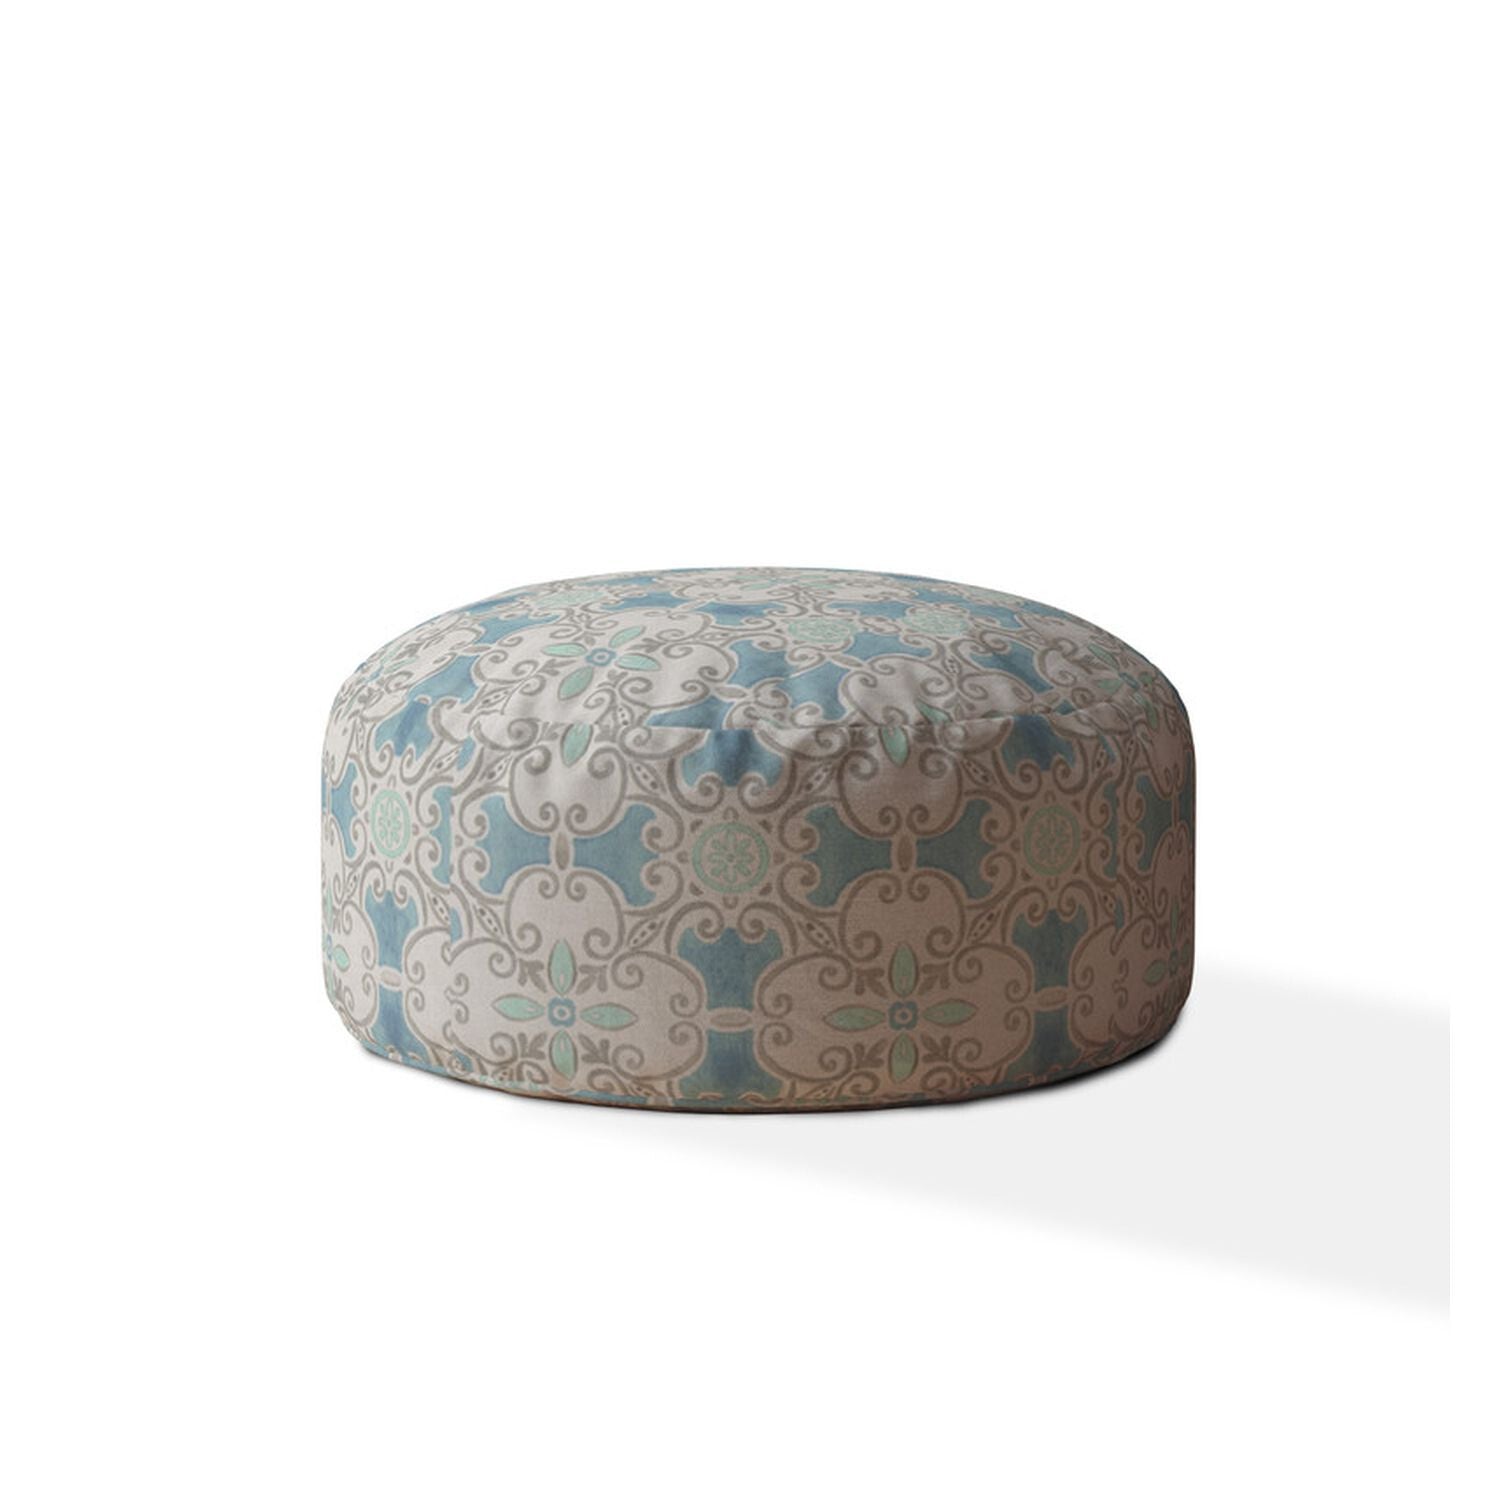 24" Blue Flax Round Ikat Pouf Ottoman